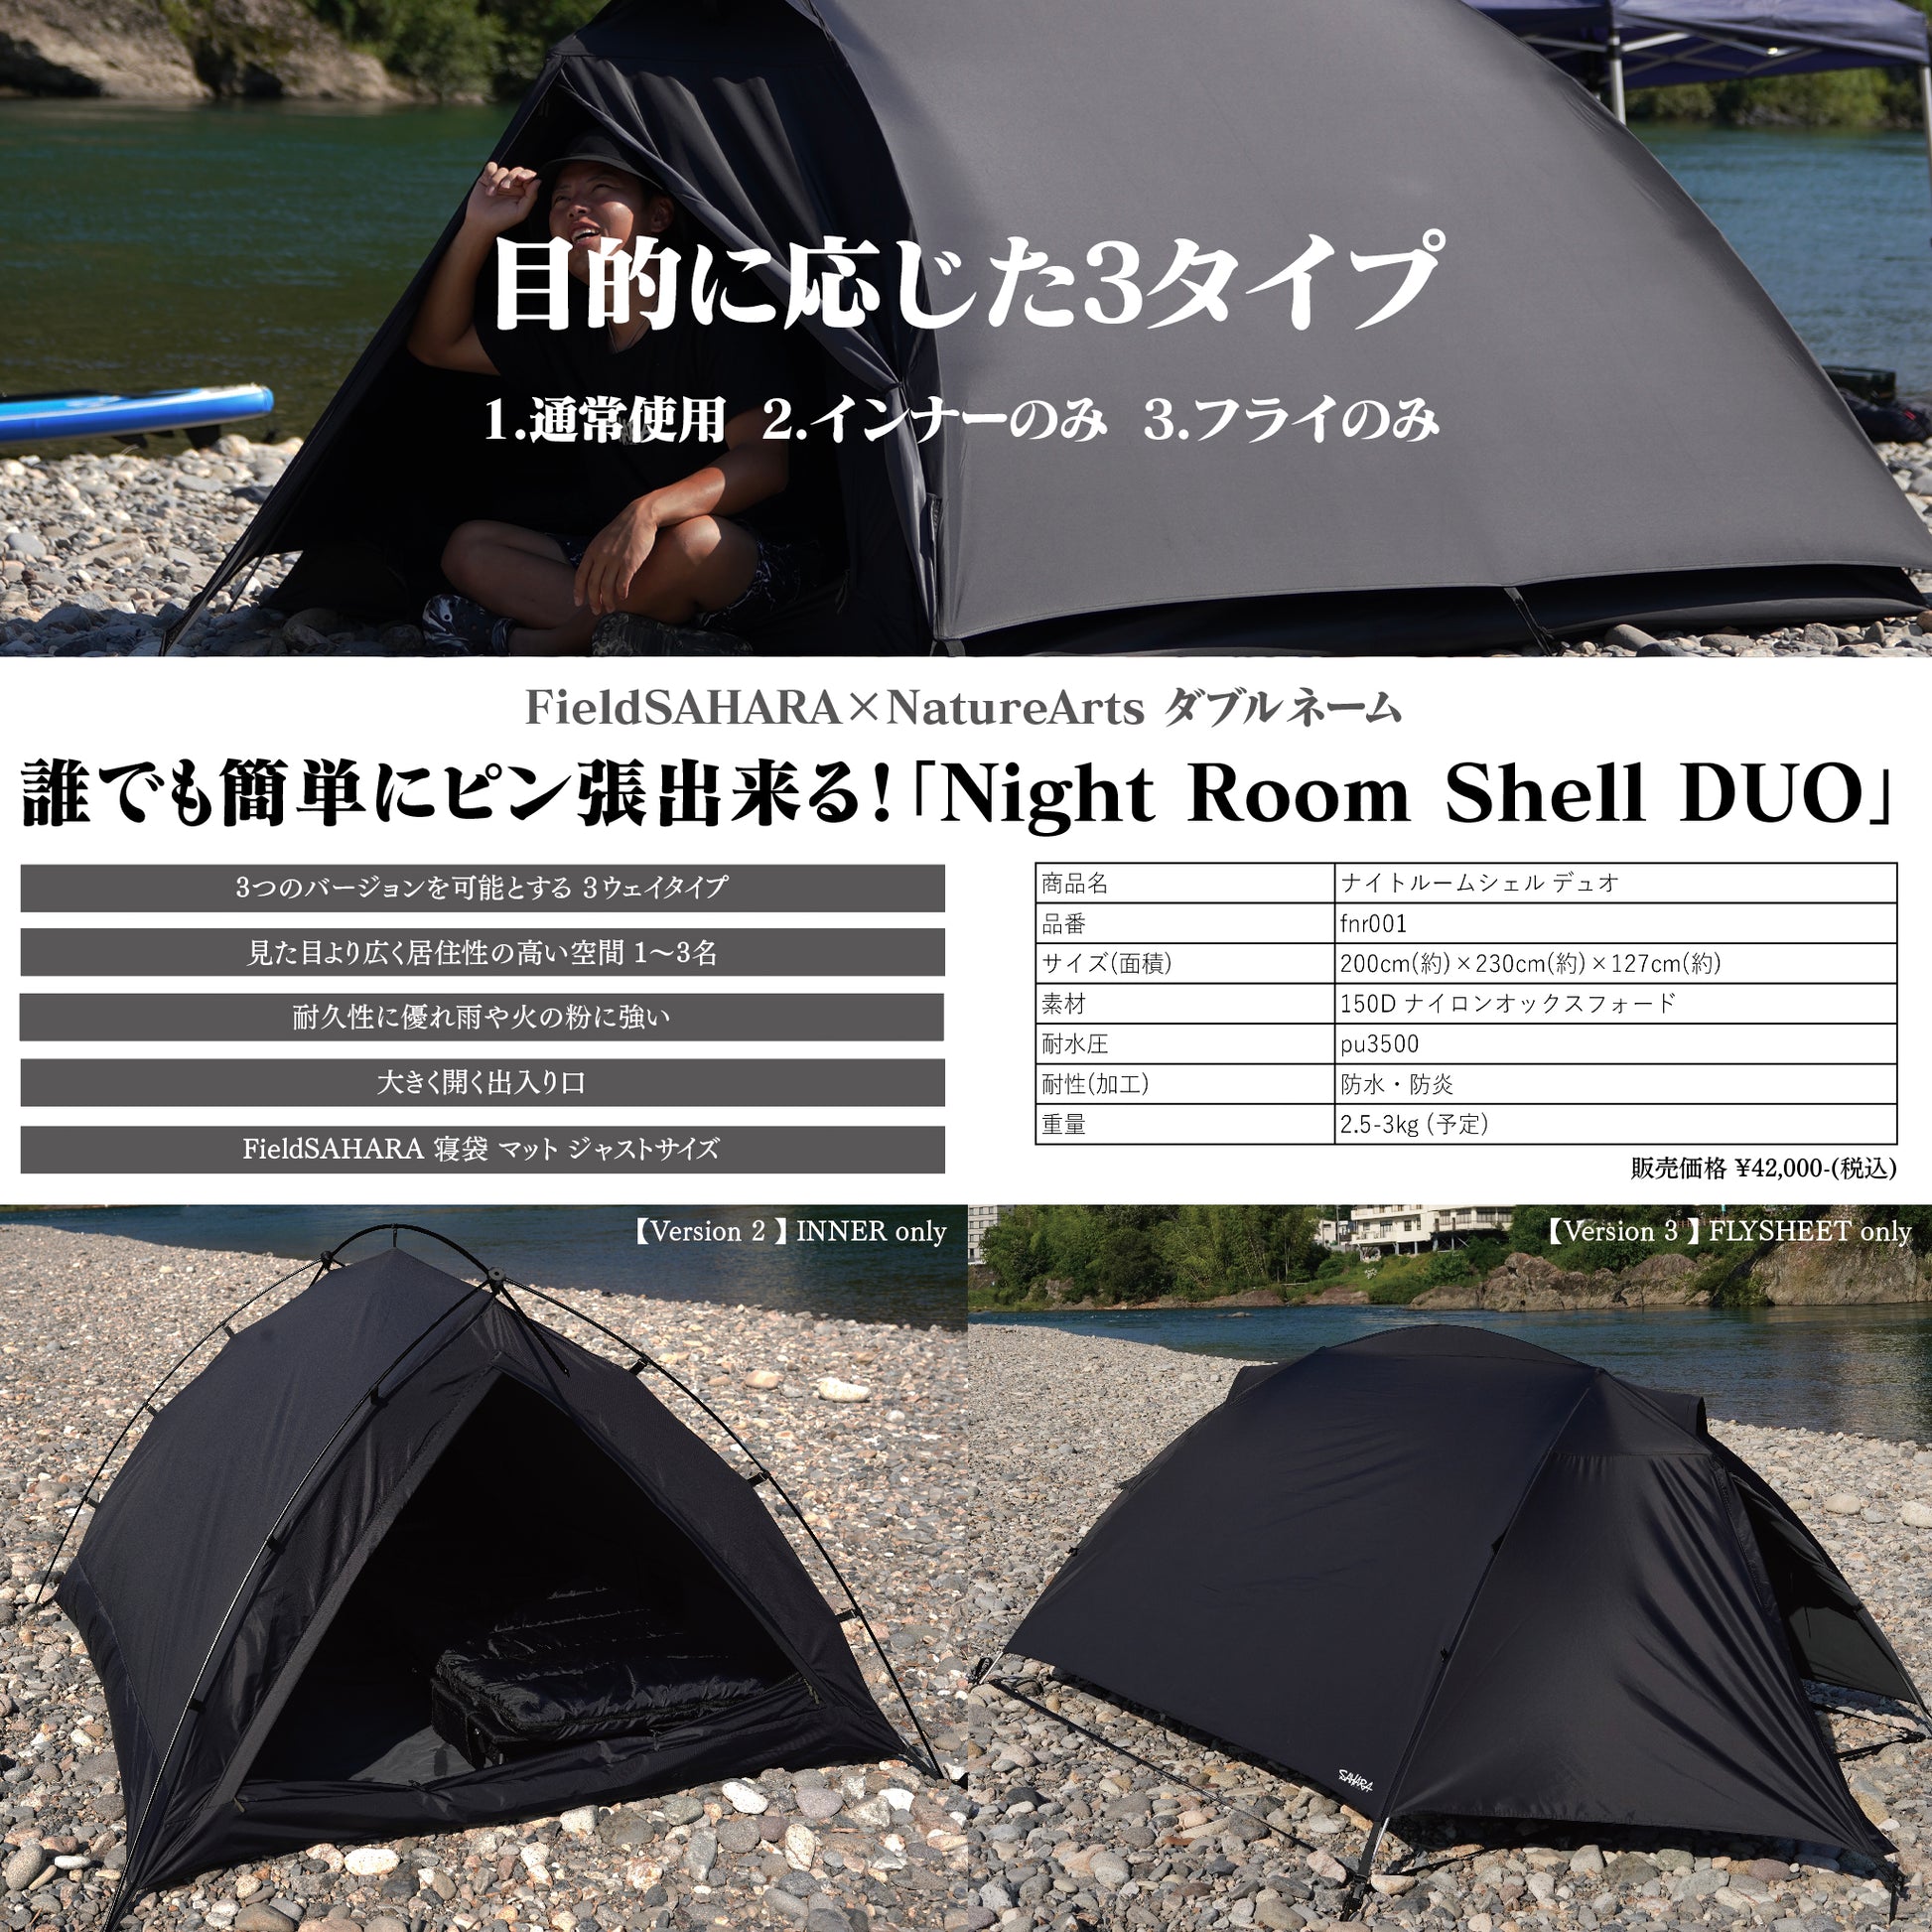 FieldSAHARA  Night Room Shell Duoドーム型ソロテント - FieldSAHARA